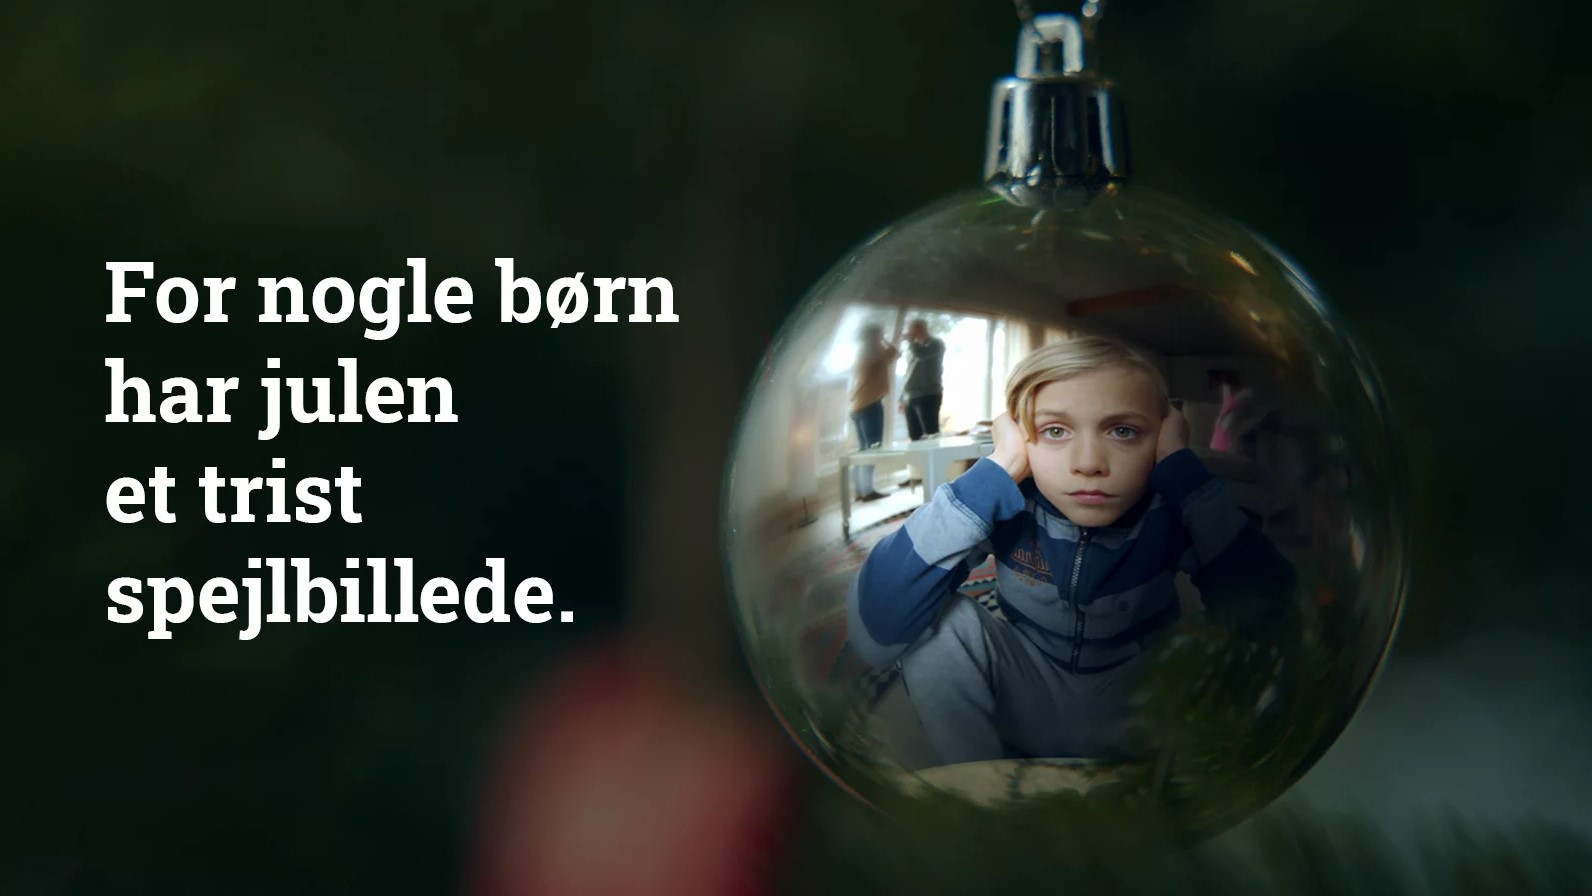 For nogle born har julen et trist spejbillede. Image: Bjorns Vilkar